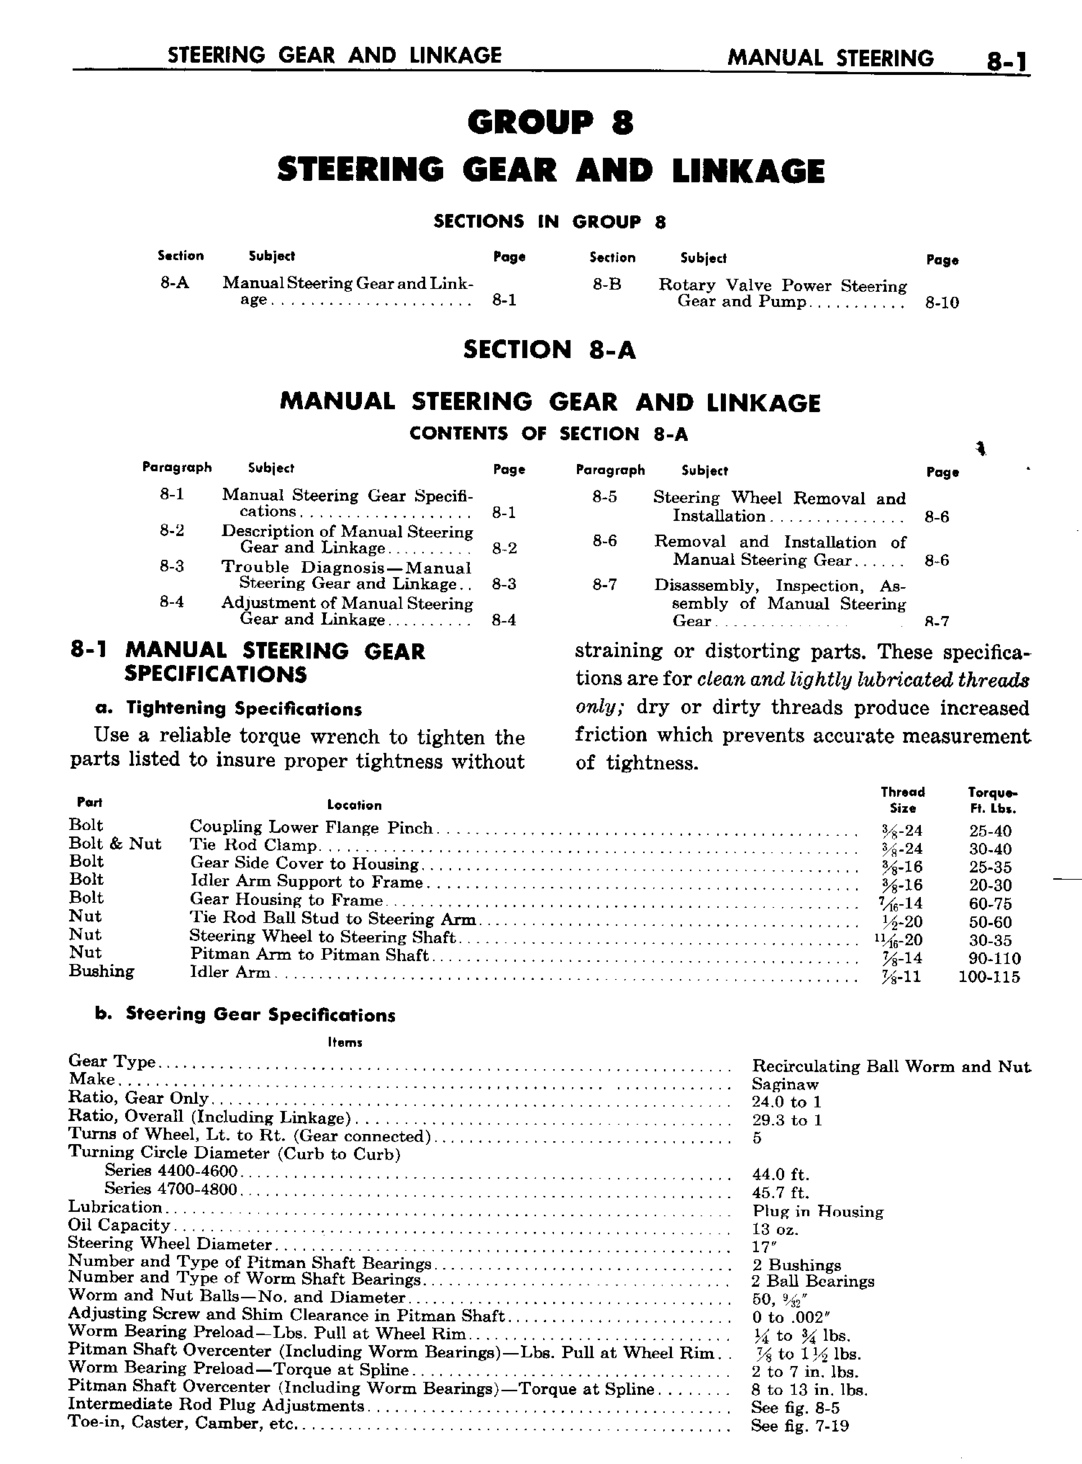 n_09 1960 Buick Shop Manual - Steering-001-001.jpg